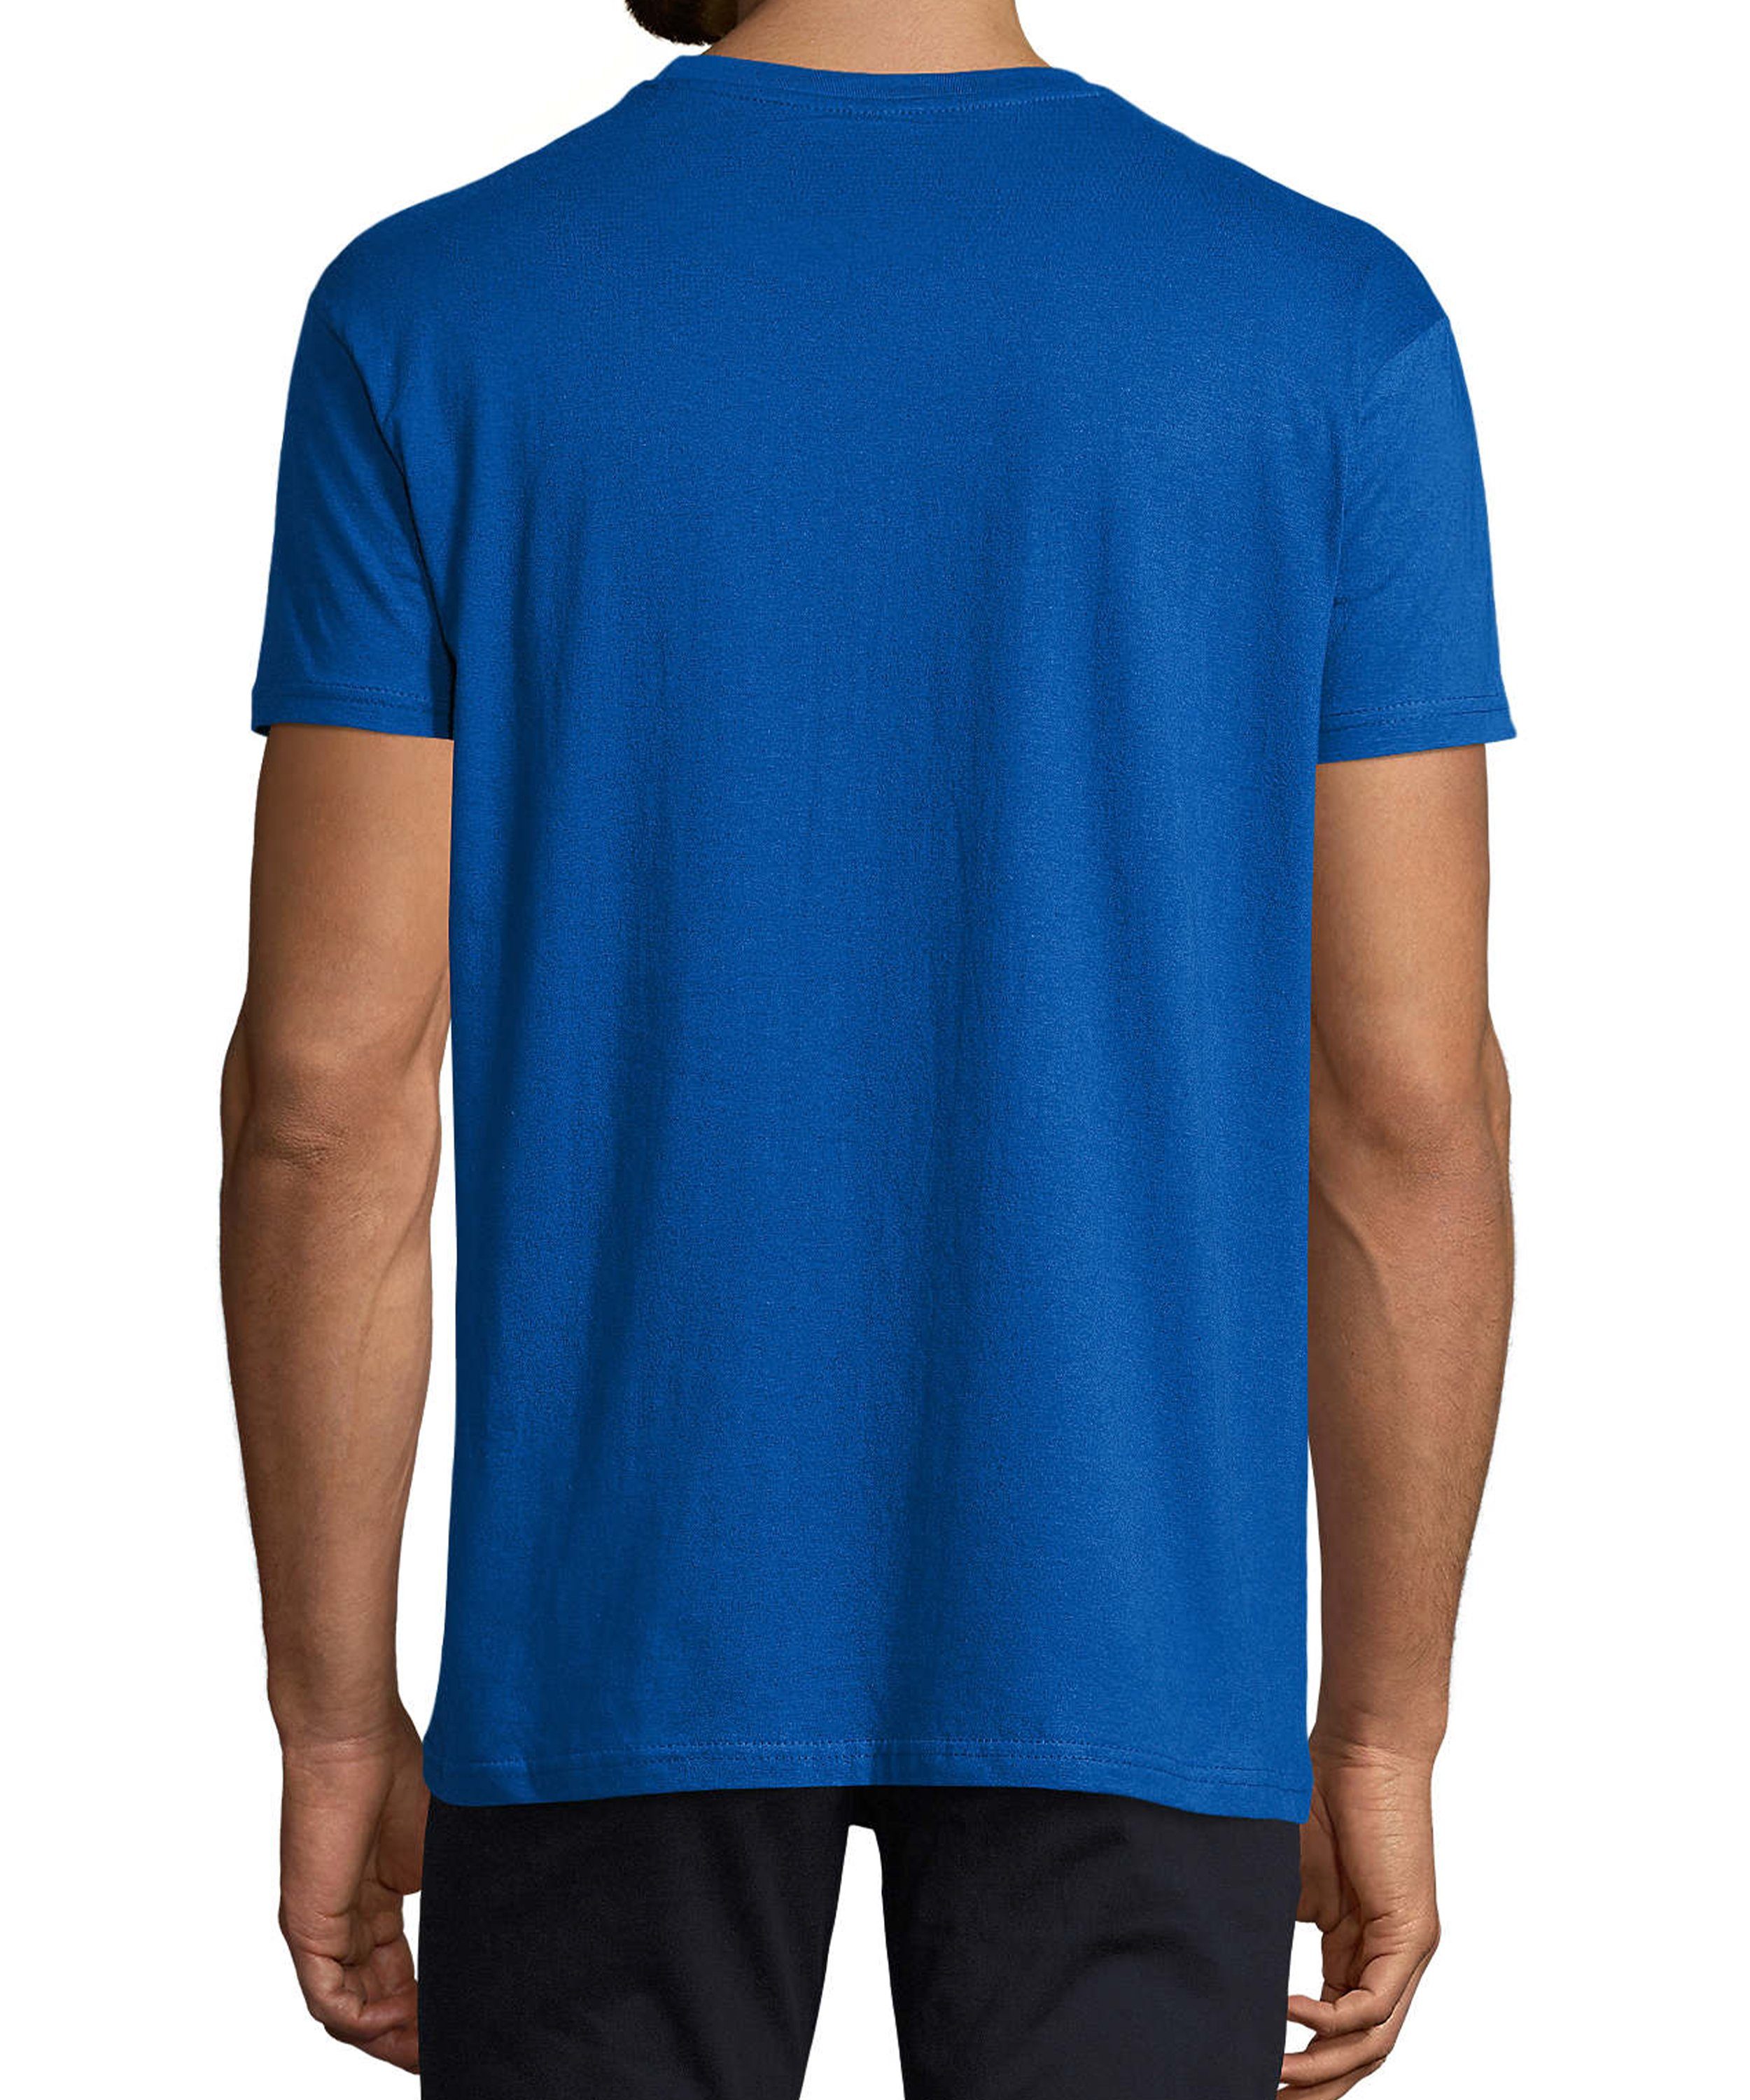 mir Trinkshirt reicht Baumwollshirt Aufdruck Fit, i308 ein blau MyDesign24 Bier Print Herren T-Shirt royal Shirt Regular mit Oktoberfest - Fun